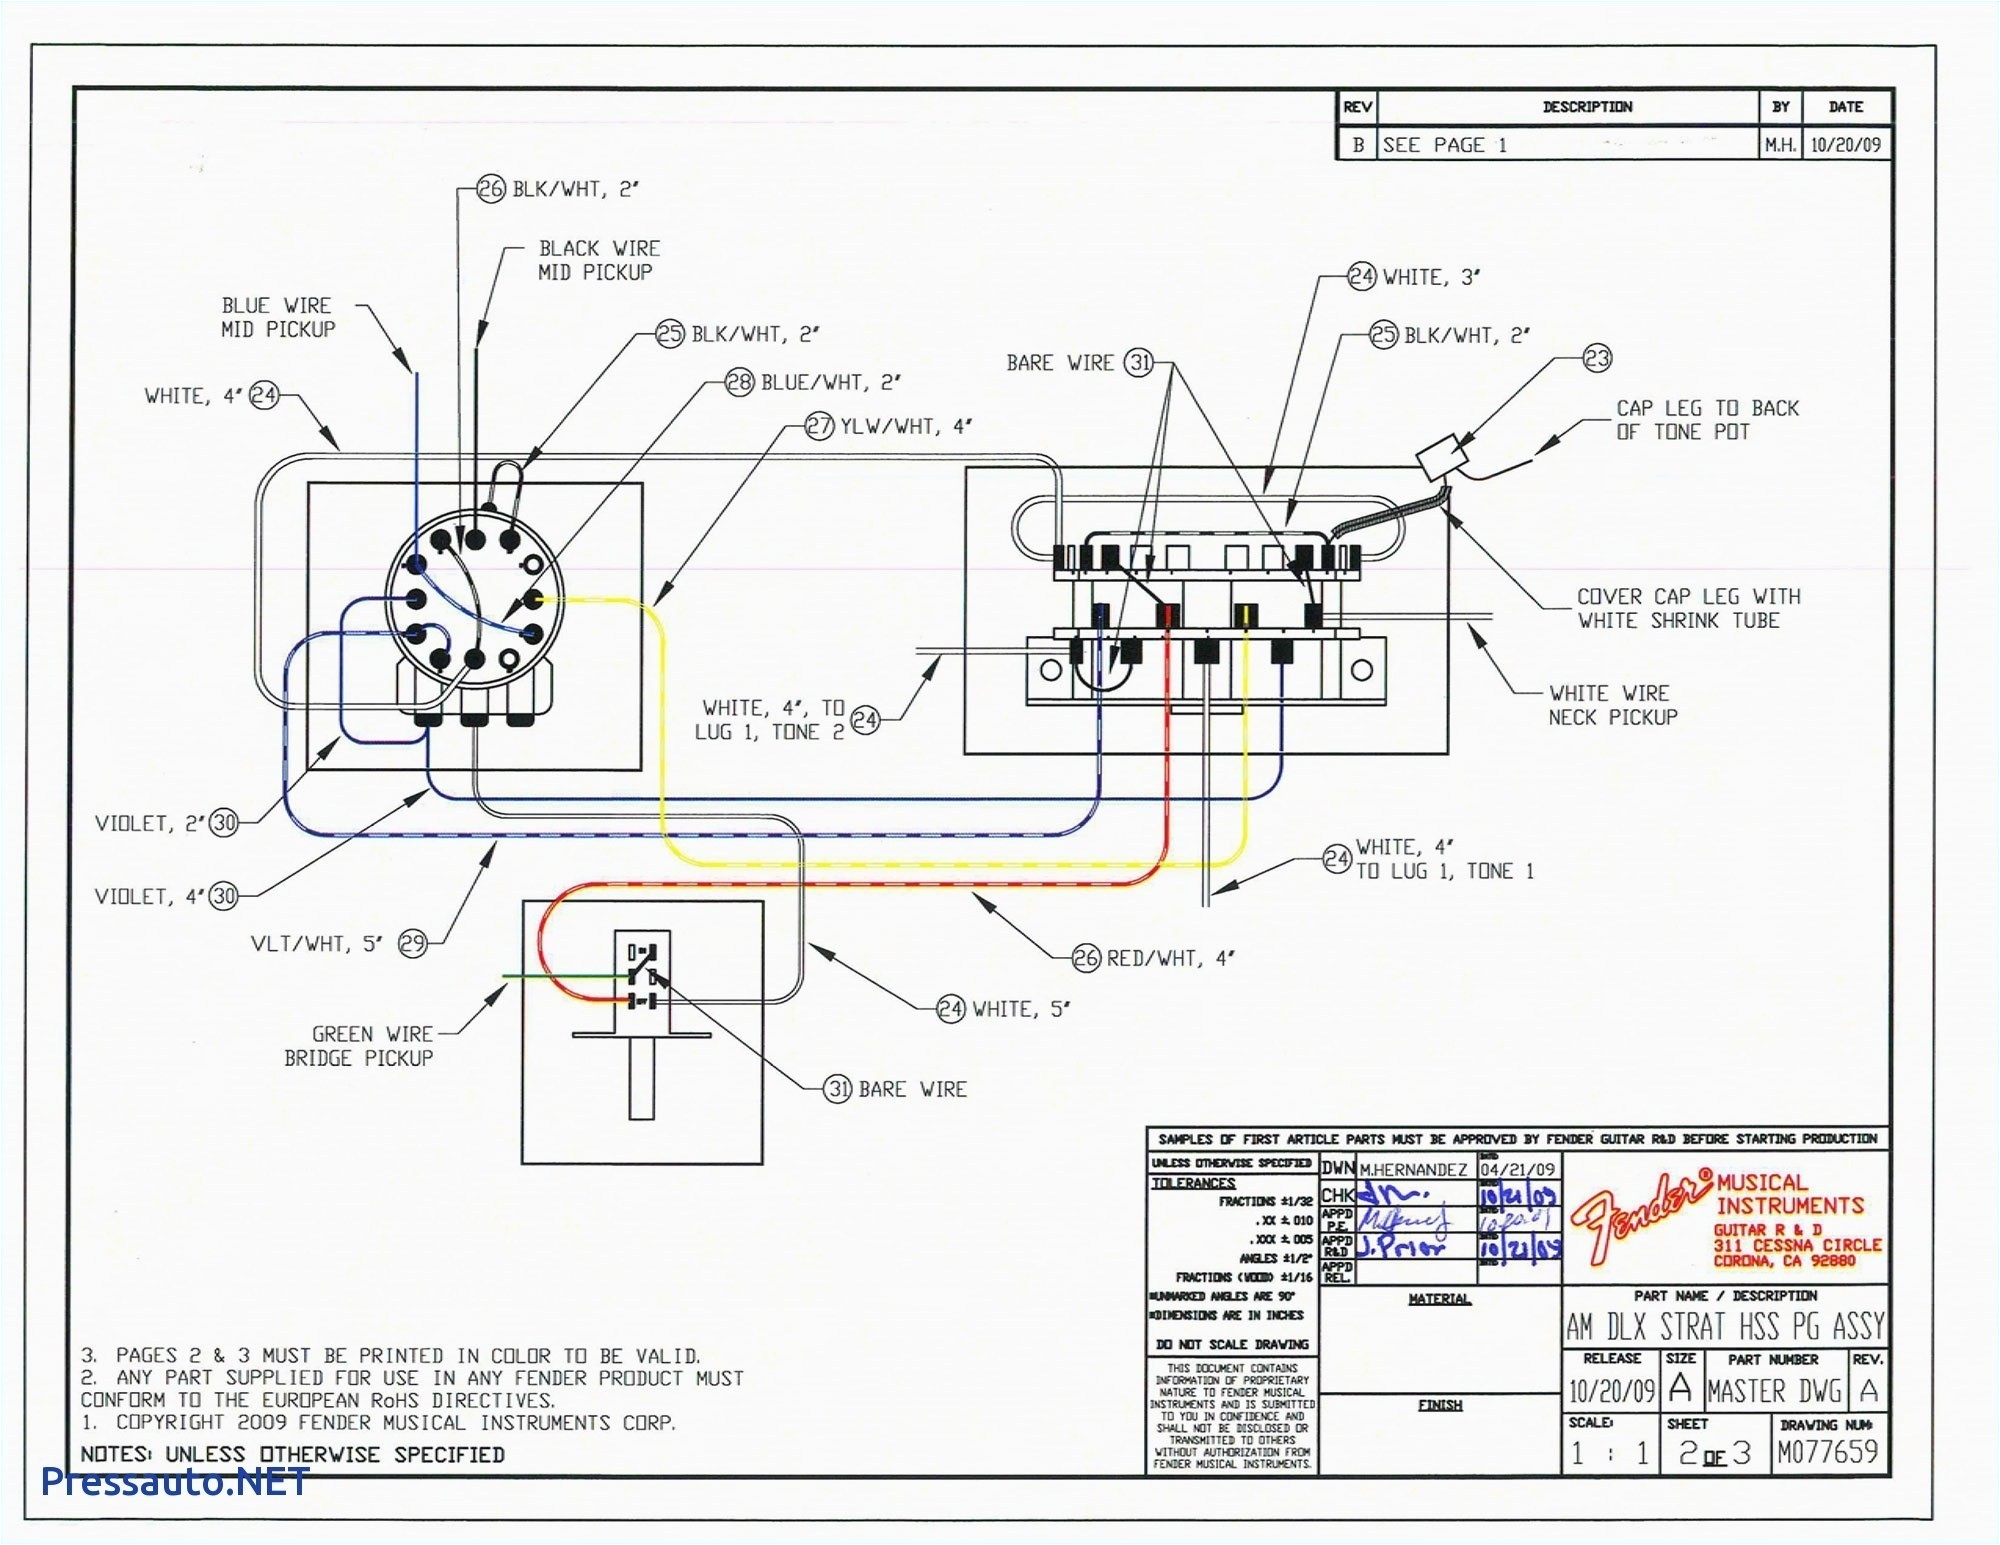 fender s1 switch wiring diagram fender jazz bass s1 switch wiring diagram best fender s1 switch of fender s1 switch wiring diagram jpg